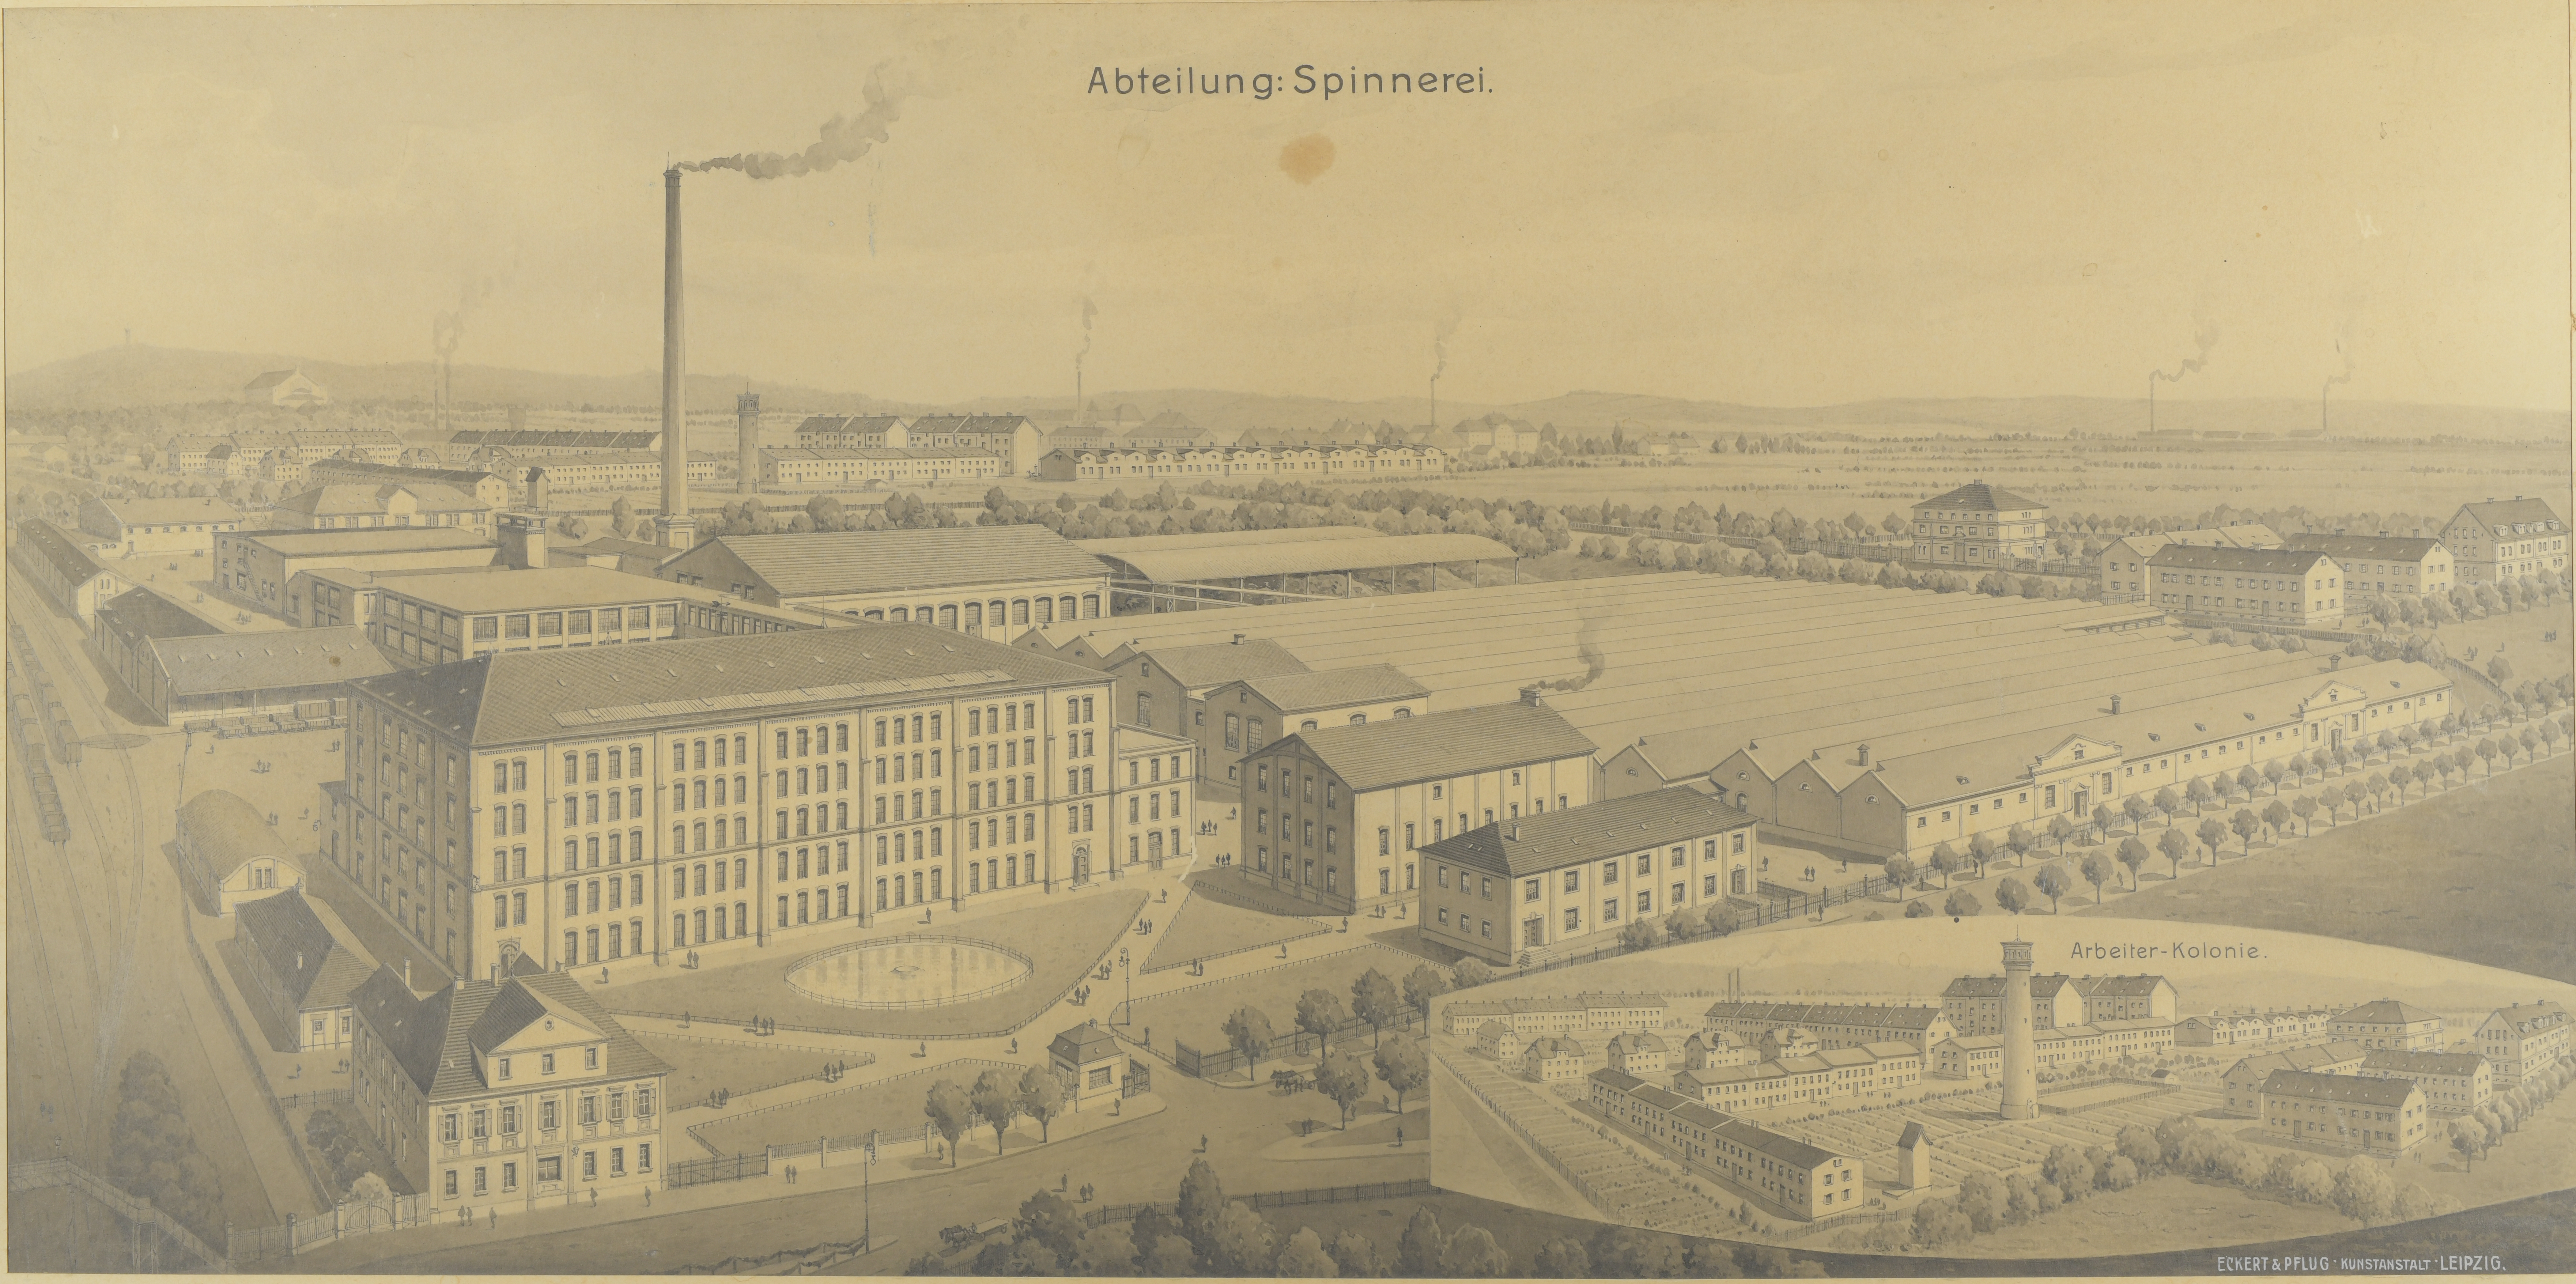 Historische Lithographie Firmengelände, Abt. Spinnerei mit Arbeiterkolonnie (Burg)